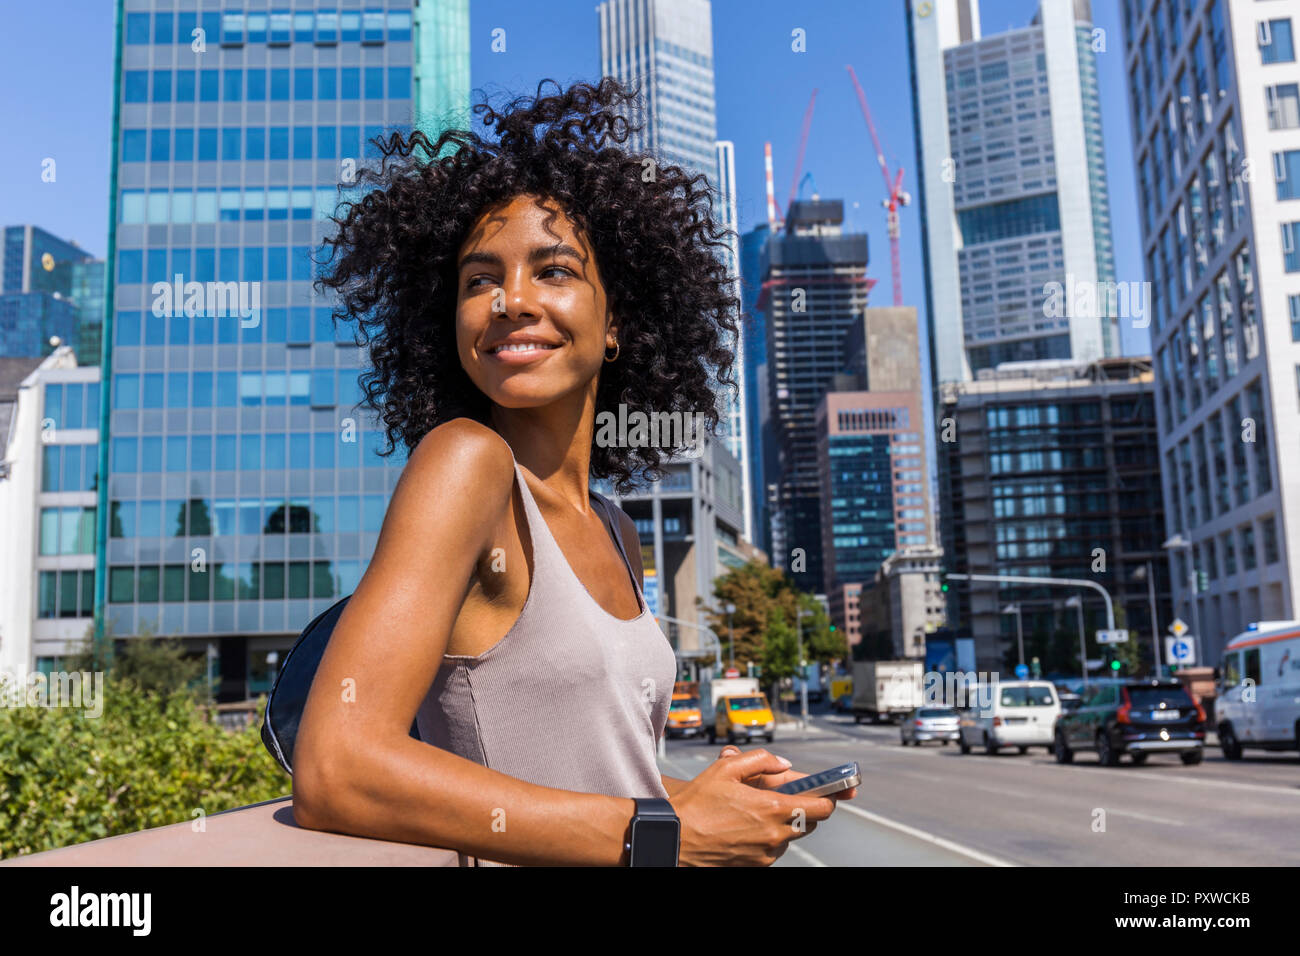 Deutschland, Frankfurt, Portrait von lächelnden jungen Frau mit lockigem Haar in der Stadt Stockfoto